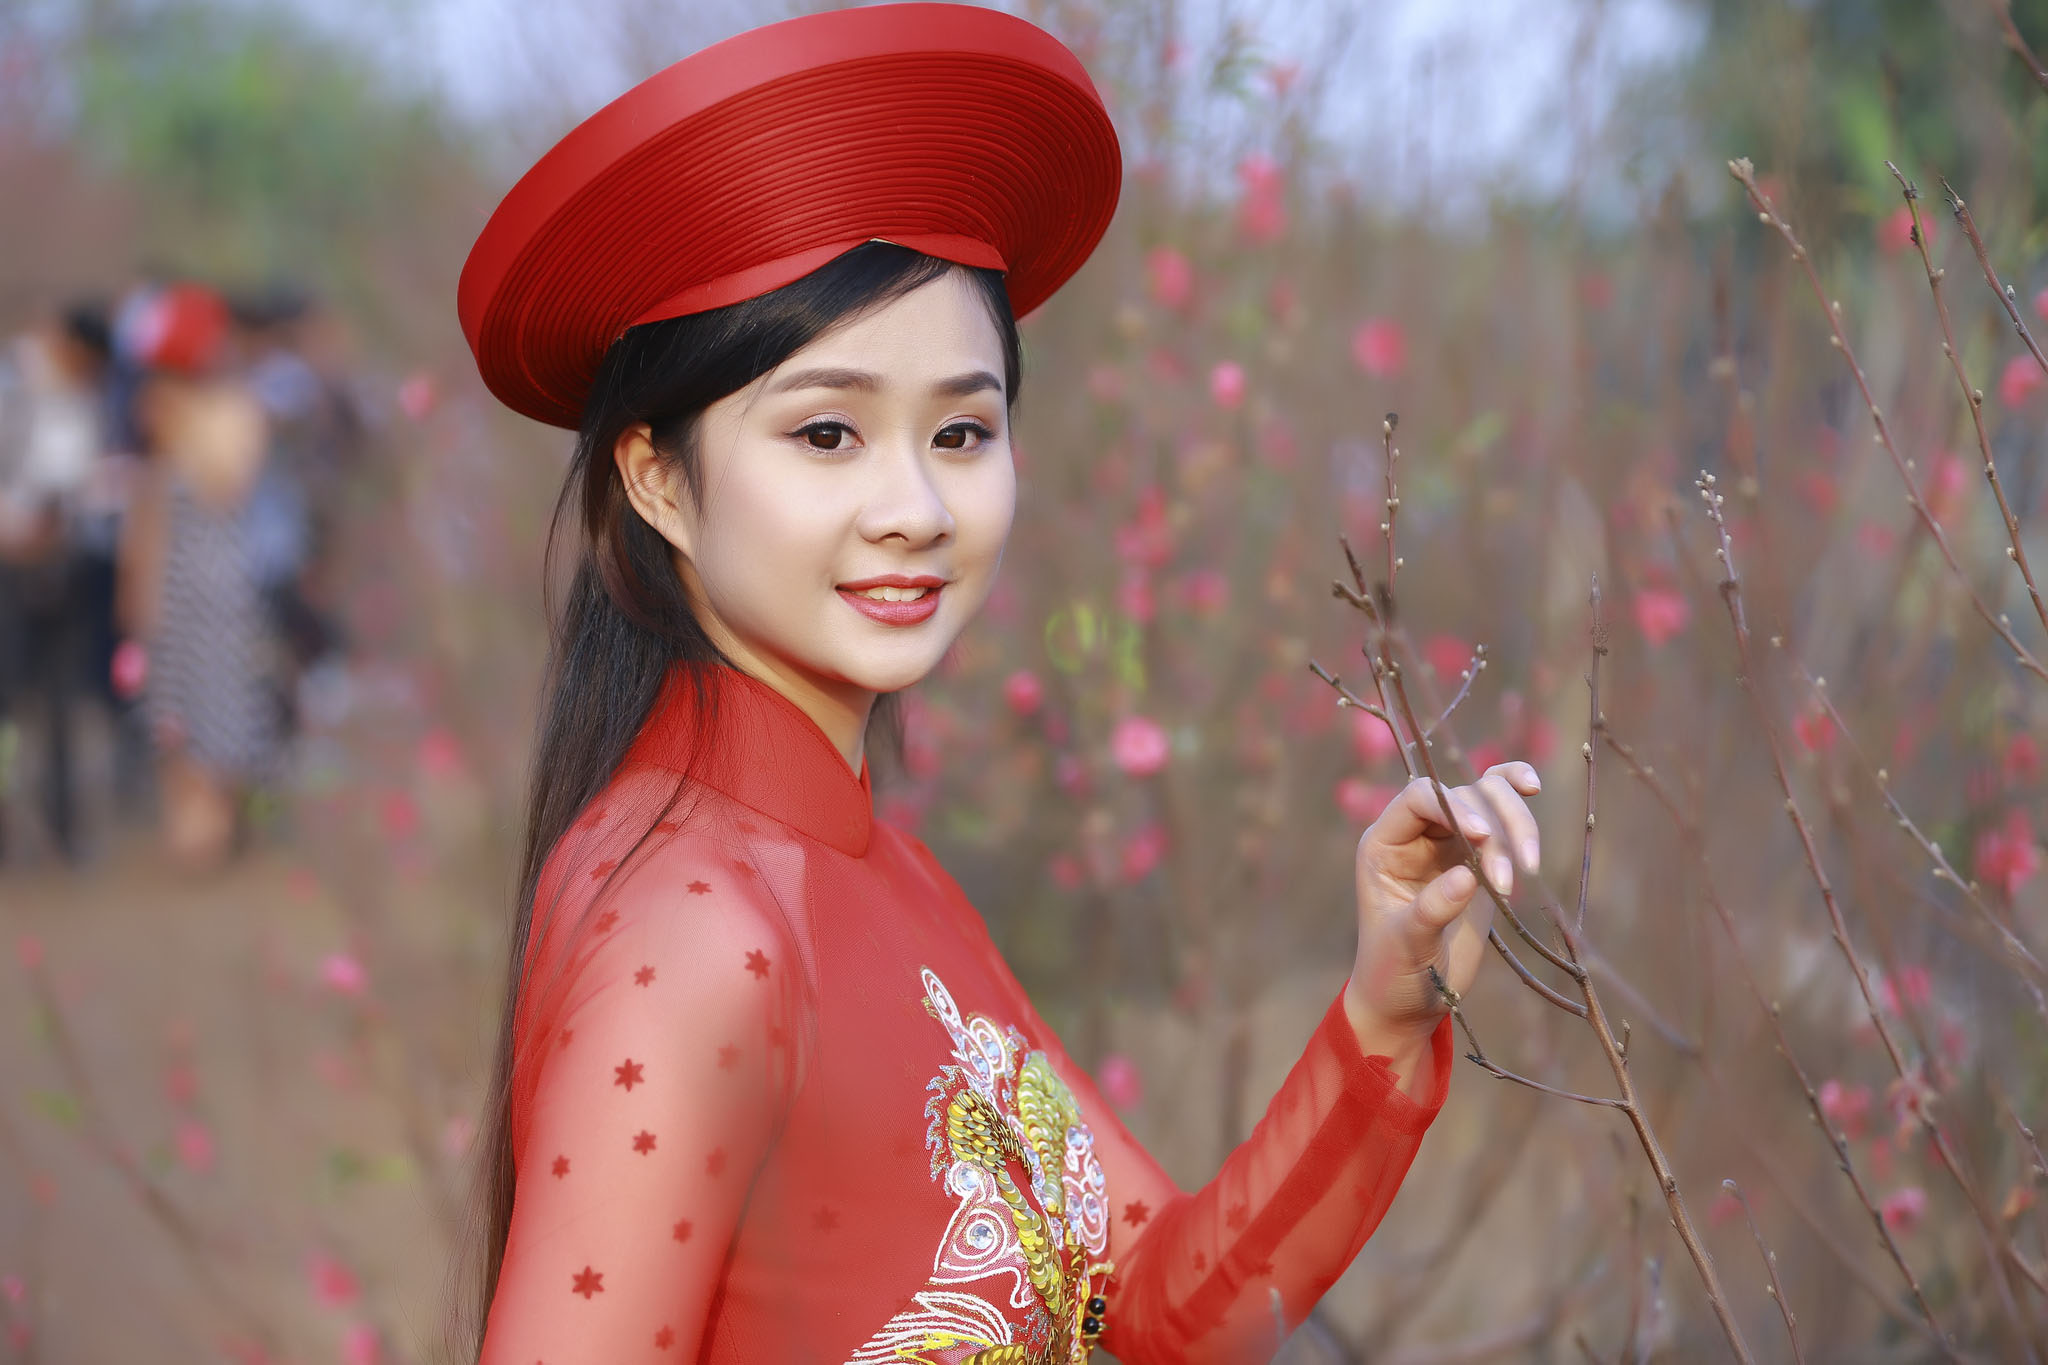 越南女孩的新年照天然美,传统服装显身材